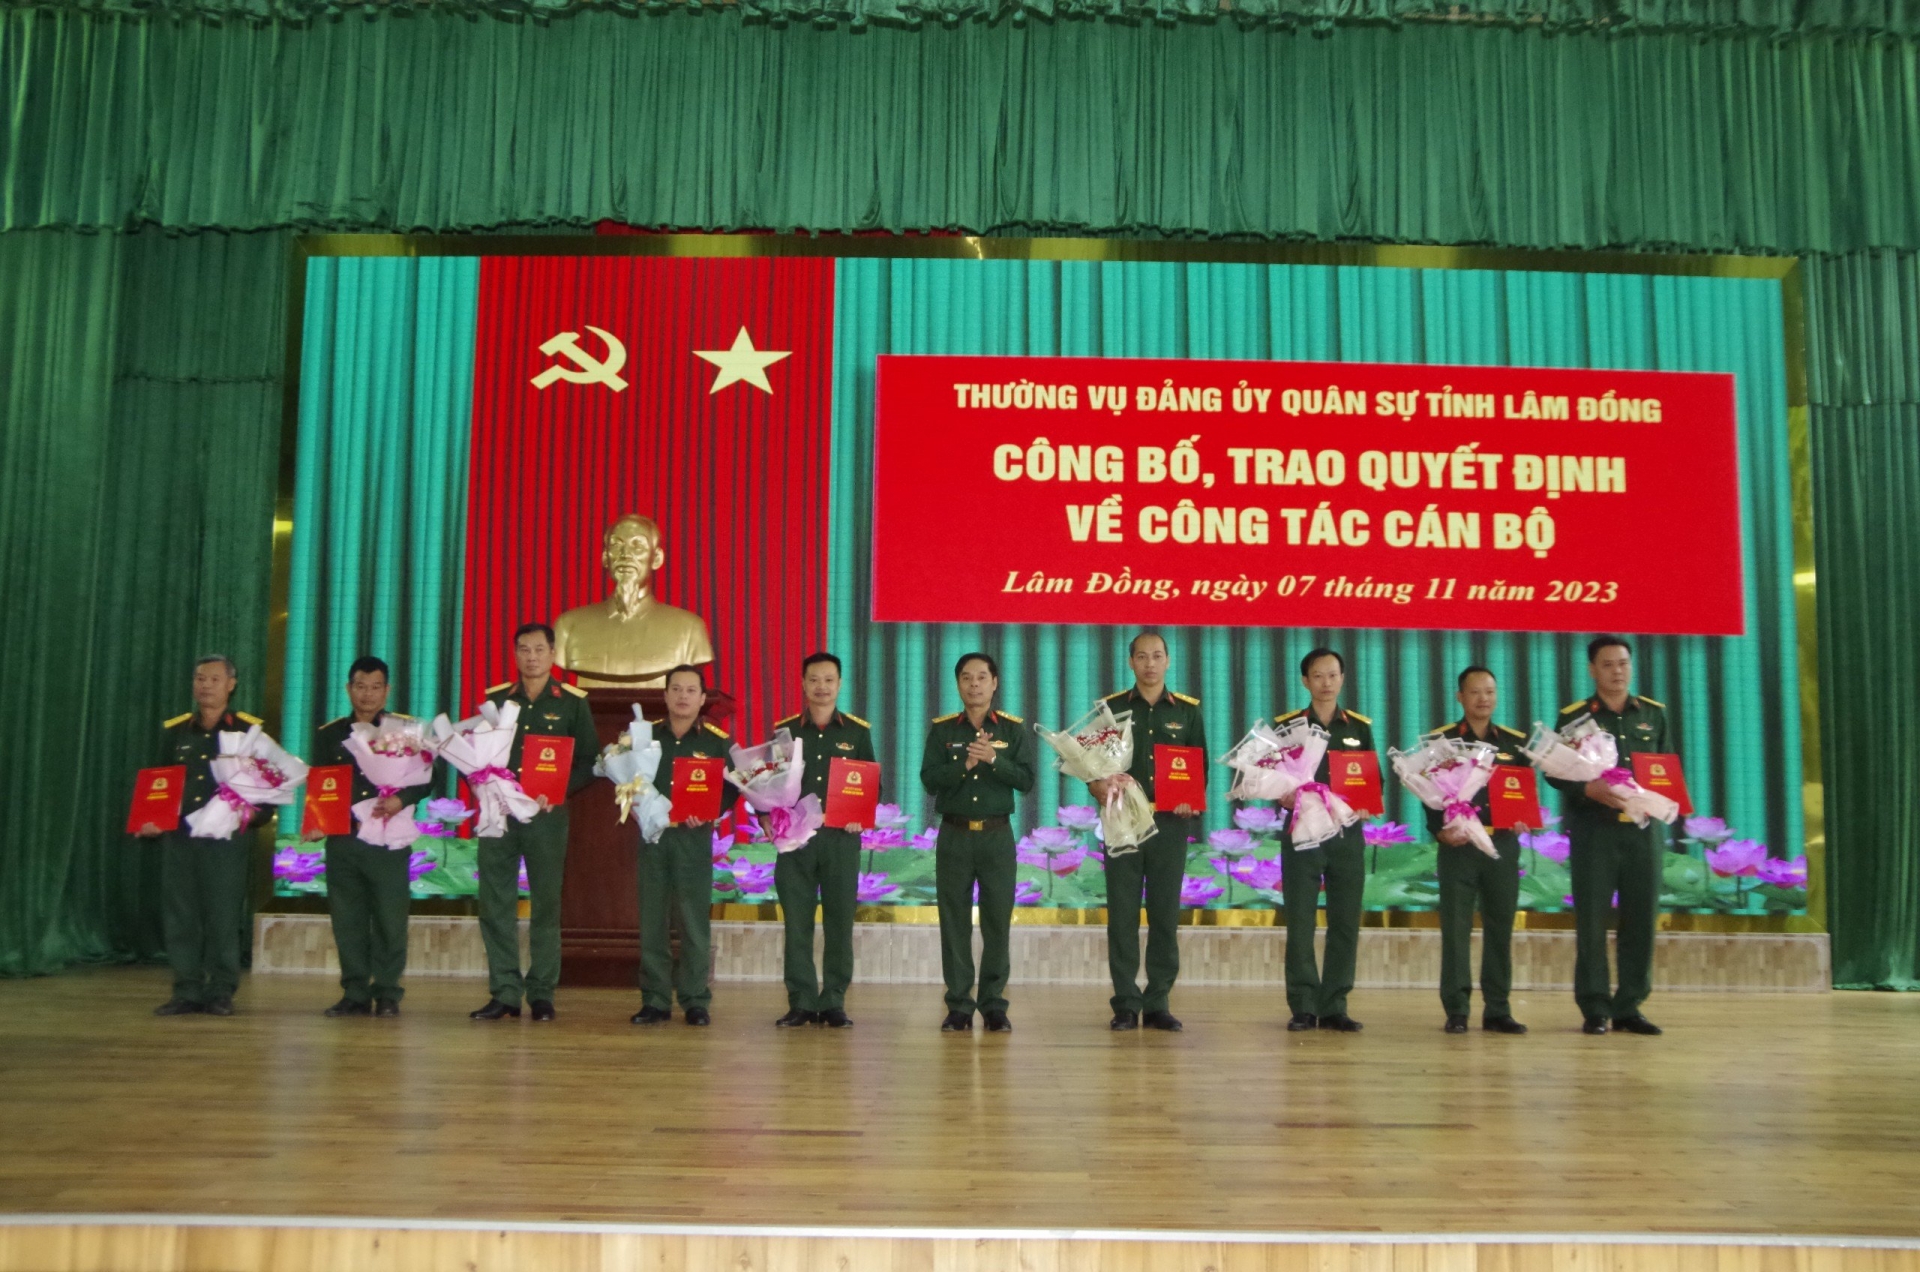 Đảng ủy Bộ CHQS tỉnh công bố các quyết định về công tác cán bộ